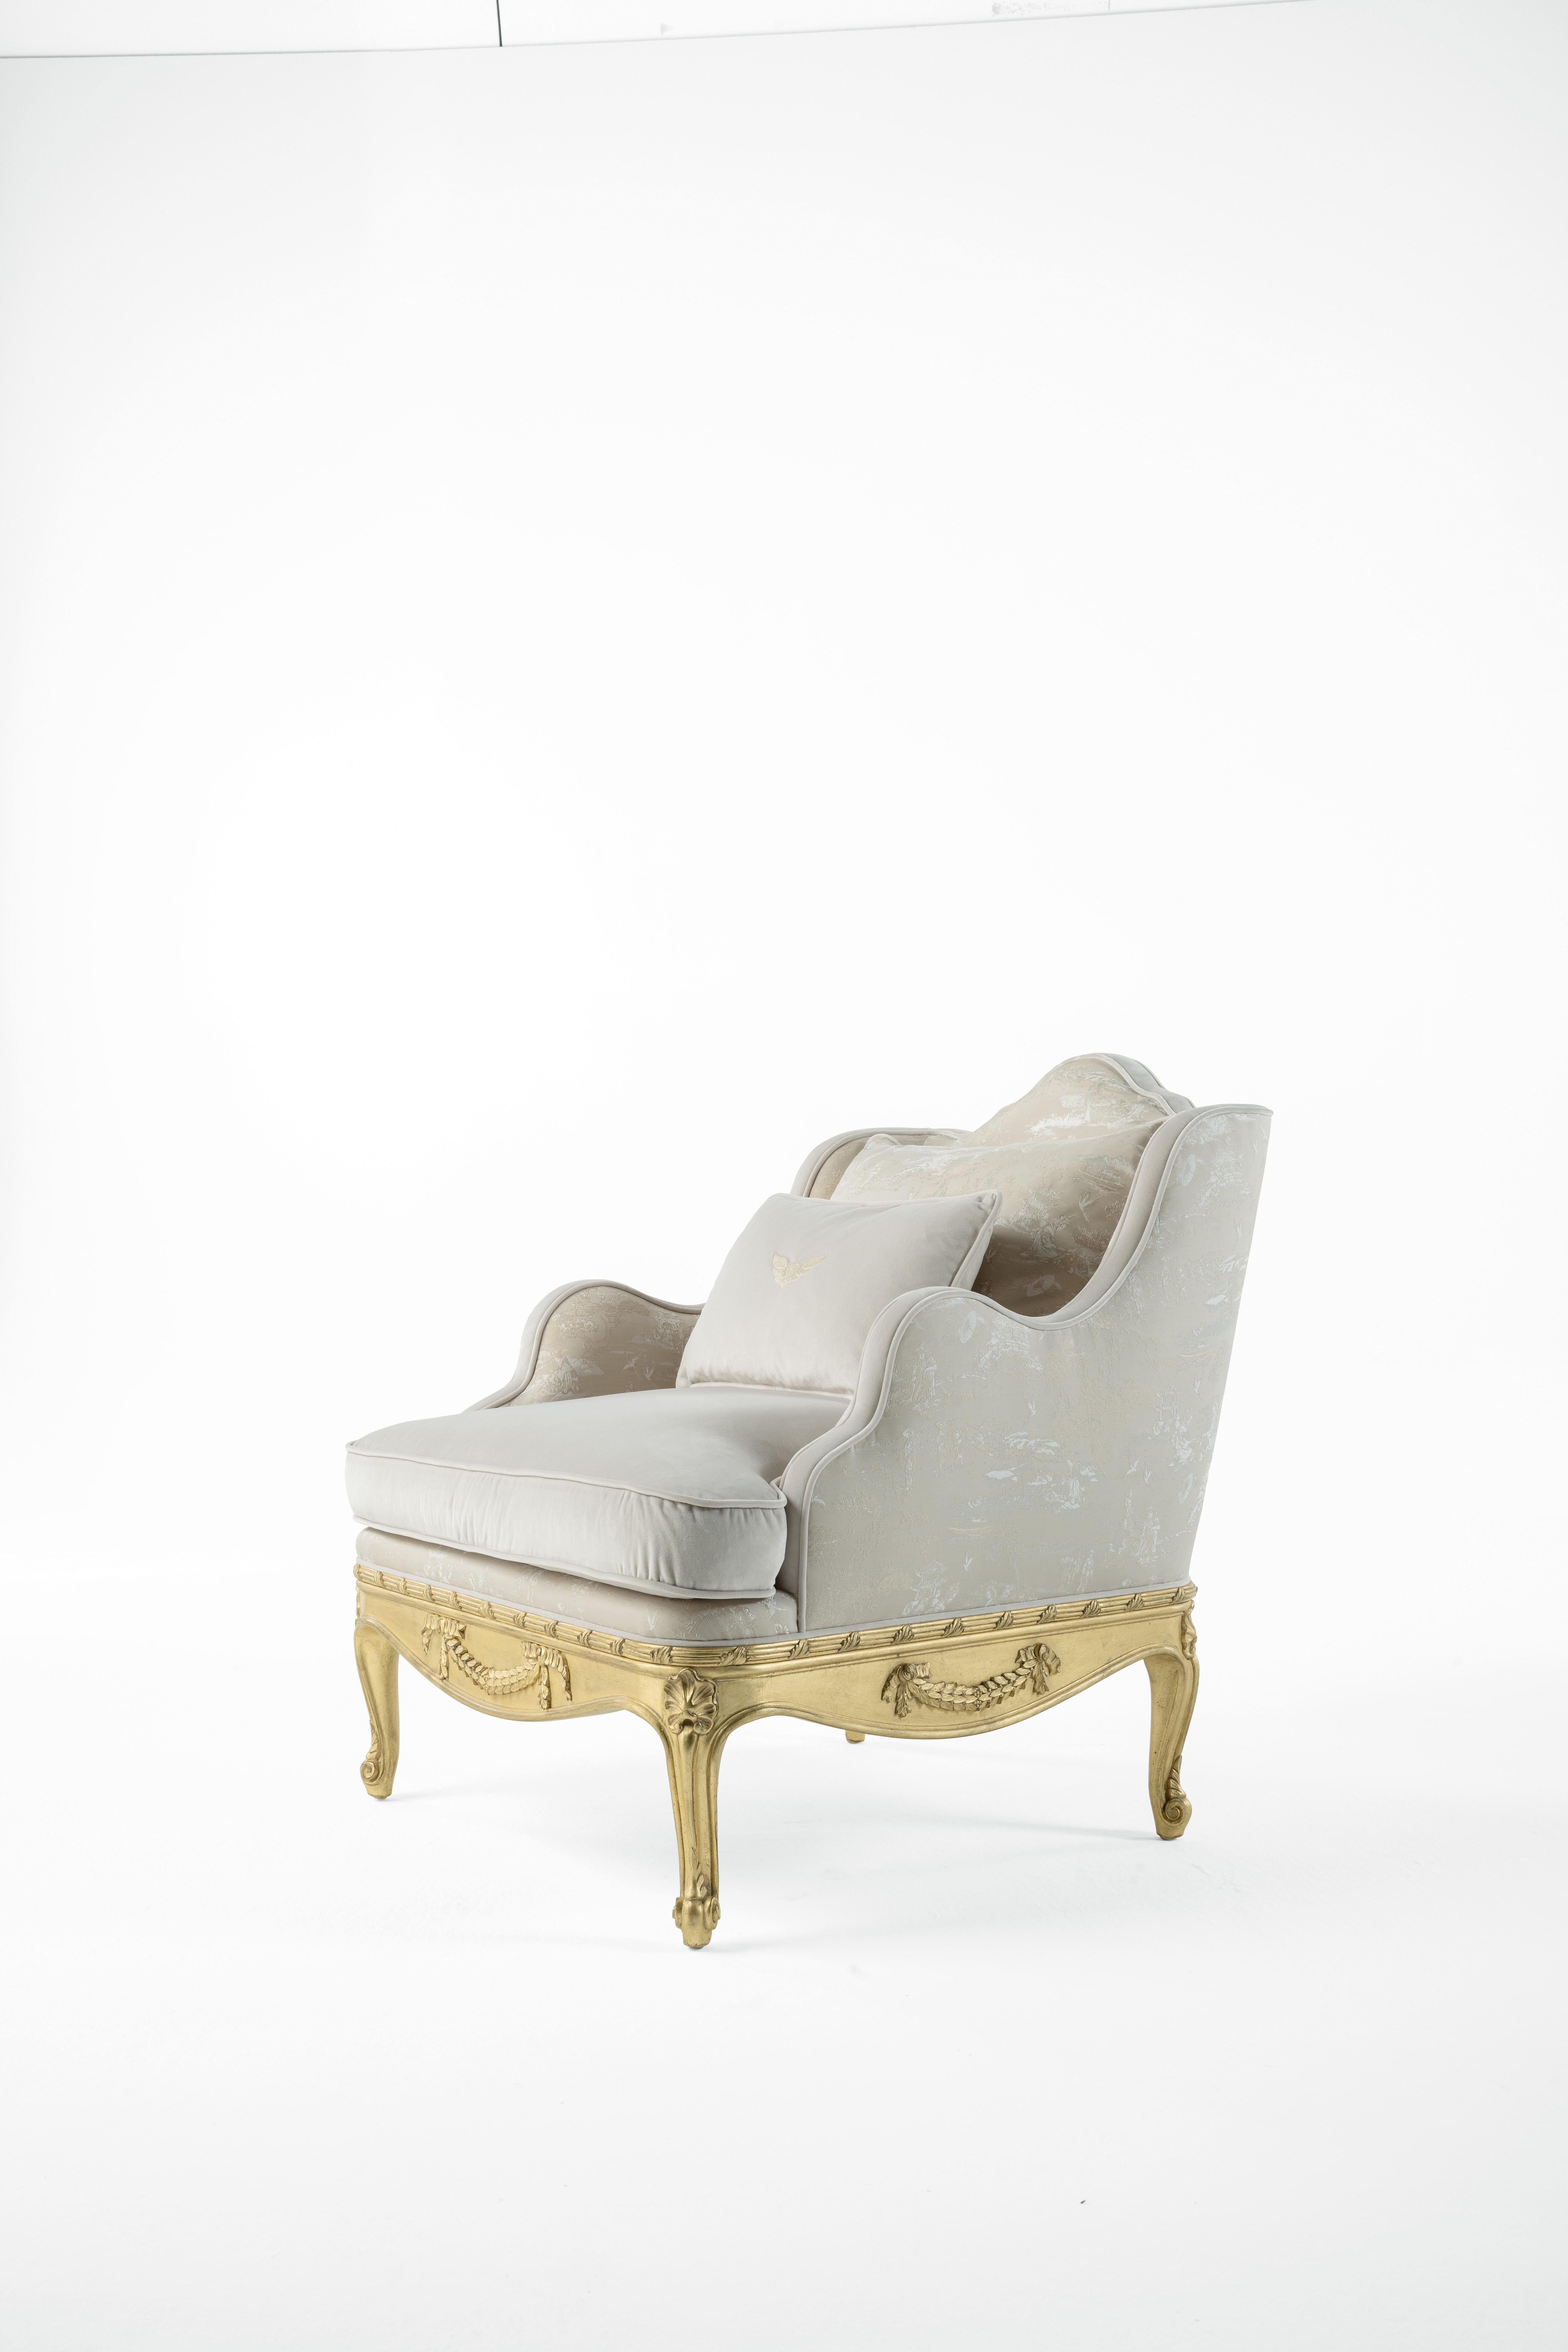 Des lignes séduisantes et des détails précieux pour la collection Eglantine. Ses formes douces et accueillantes sont embellies par un profil sculpté à la main avec une finition à la feuille d'or. Le mobilier parfait pour un cadre luxueux et élégant,